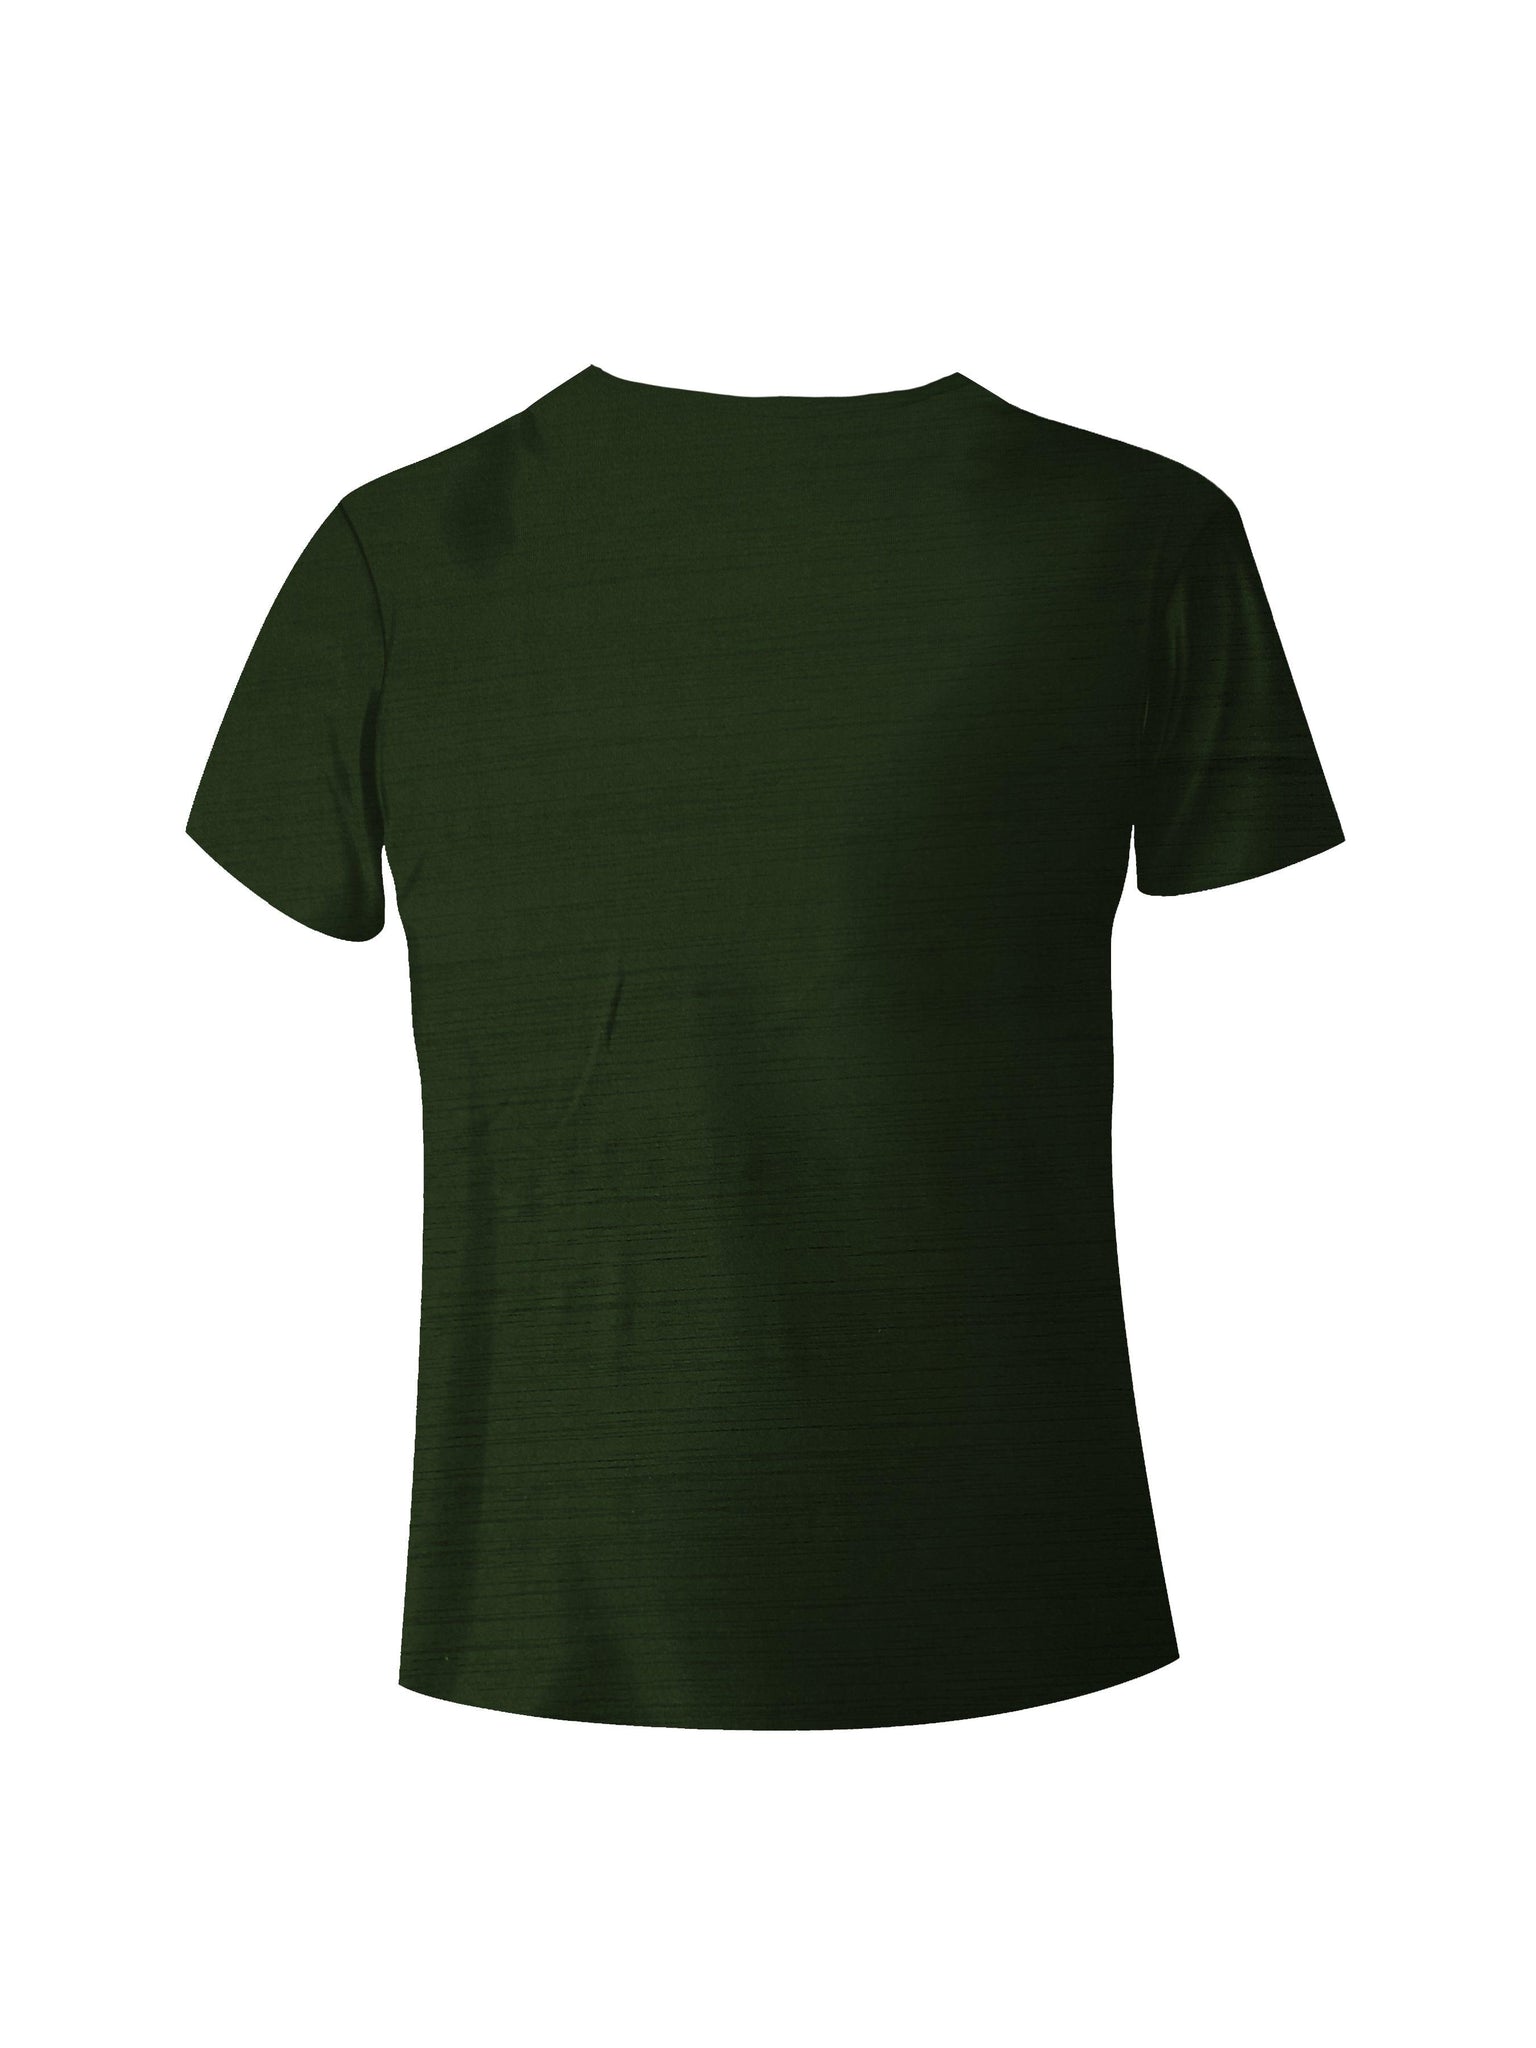 Aadhitri Men Solid Olive Green T-shirt - Aadhitri